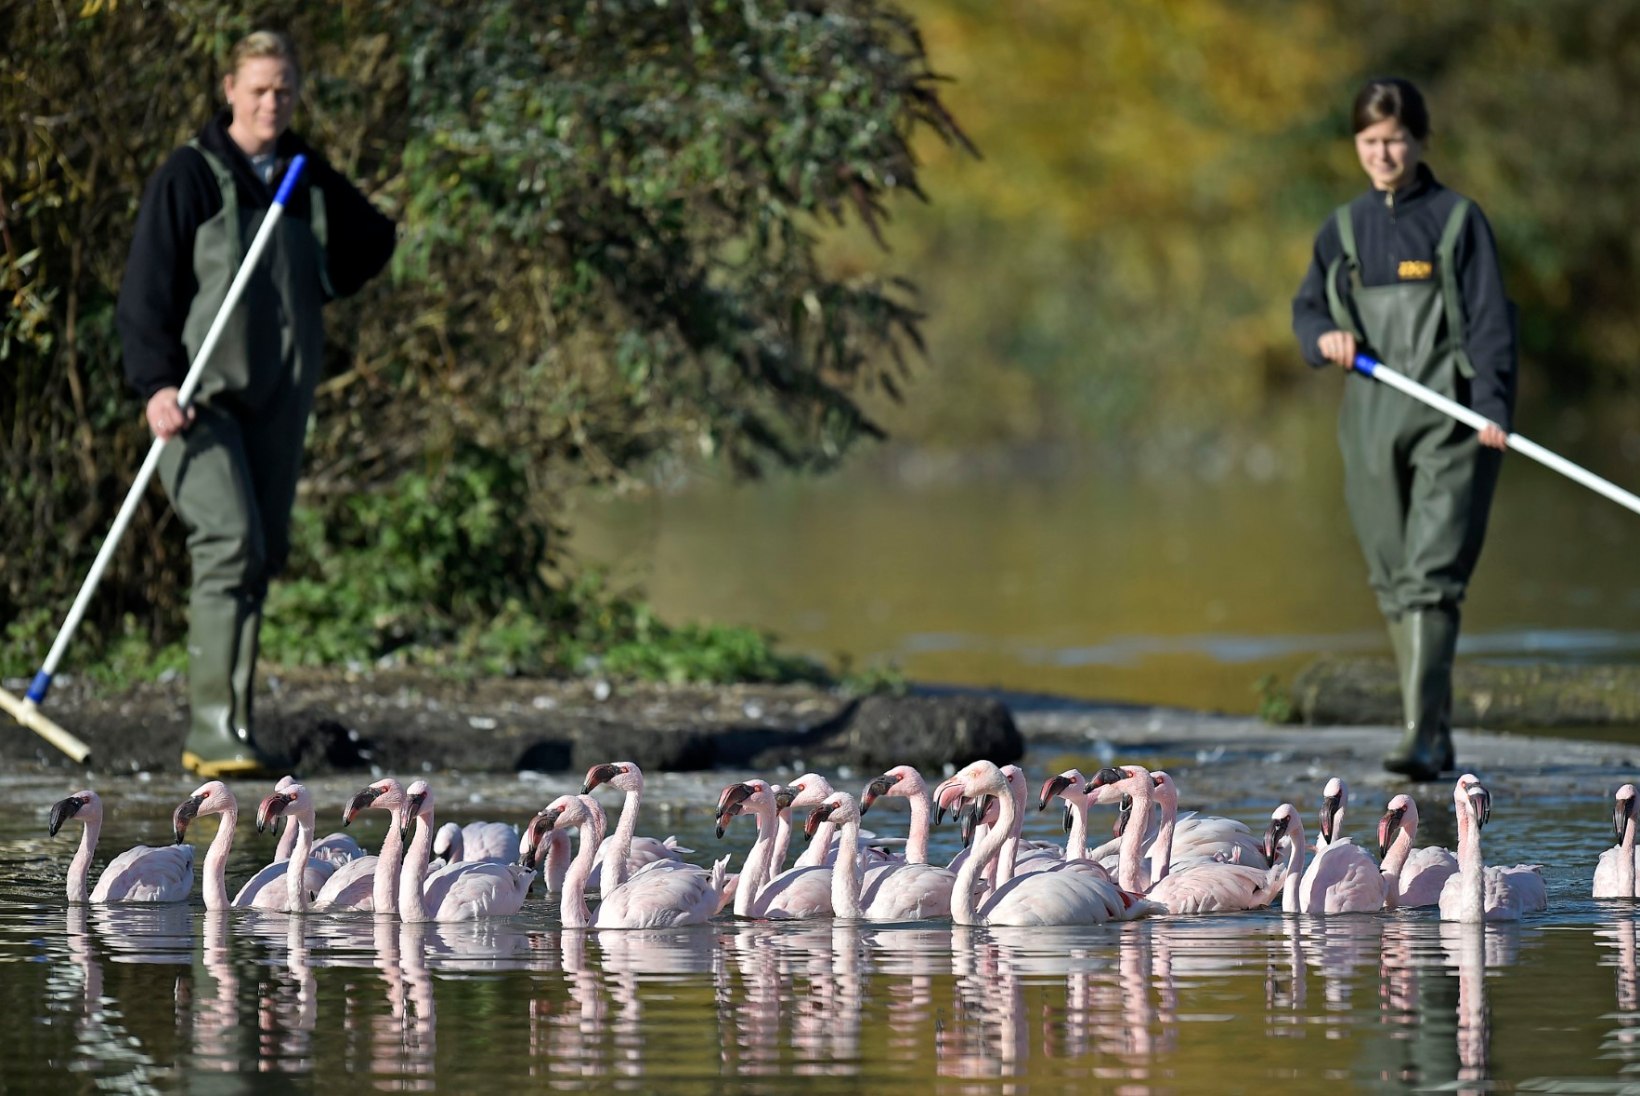 FOTOD | Saksamaa loomaaia flamingod kolivad talvekorterisse